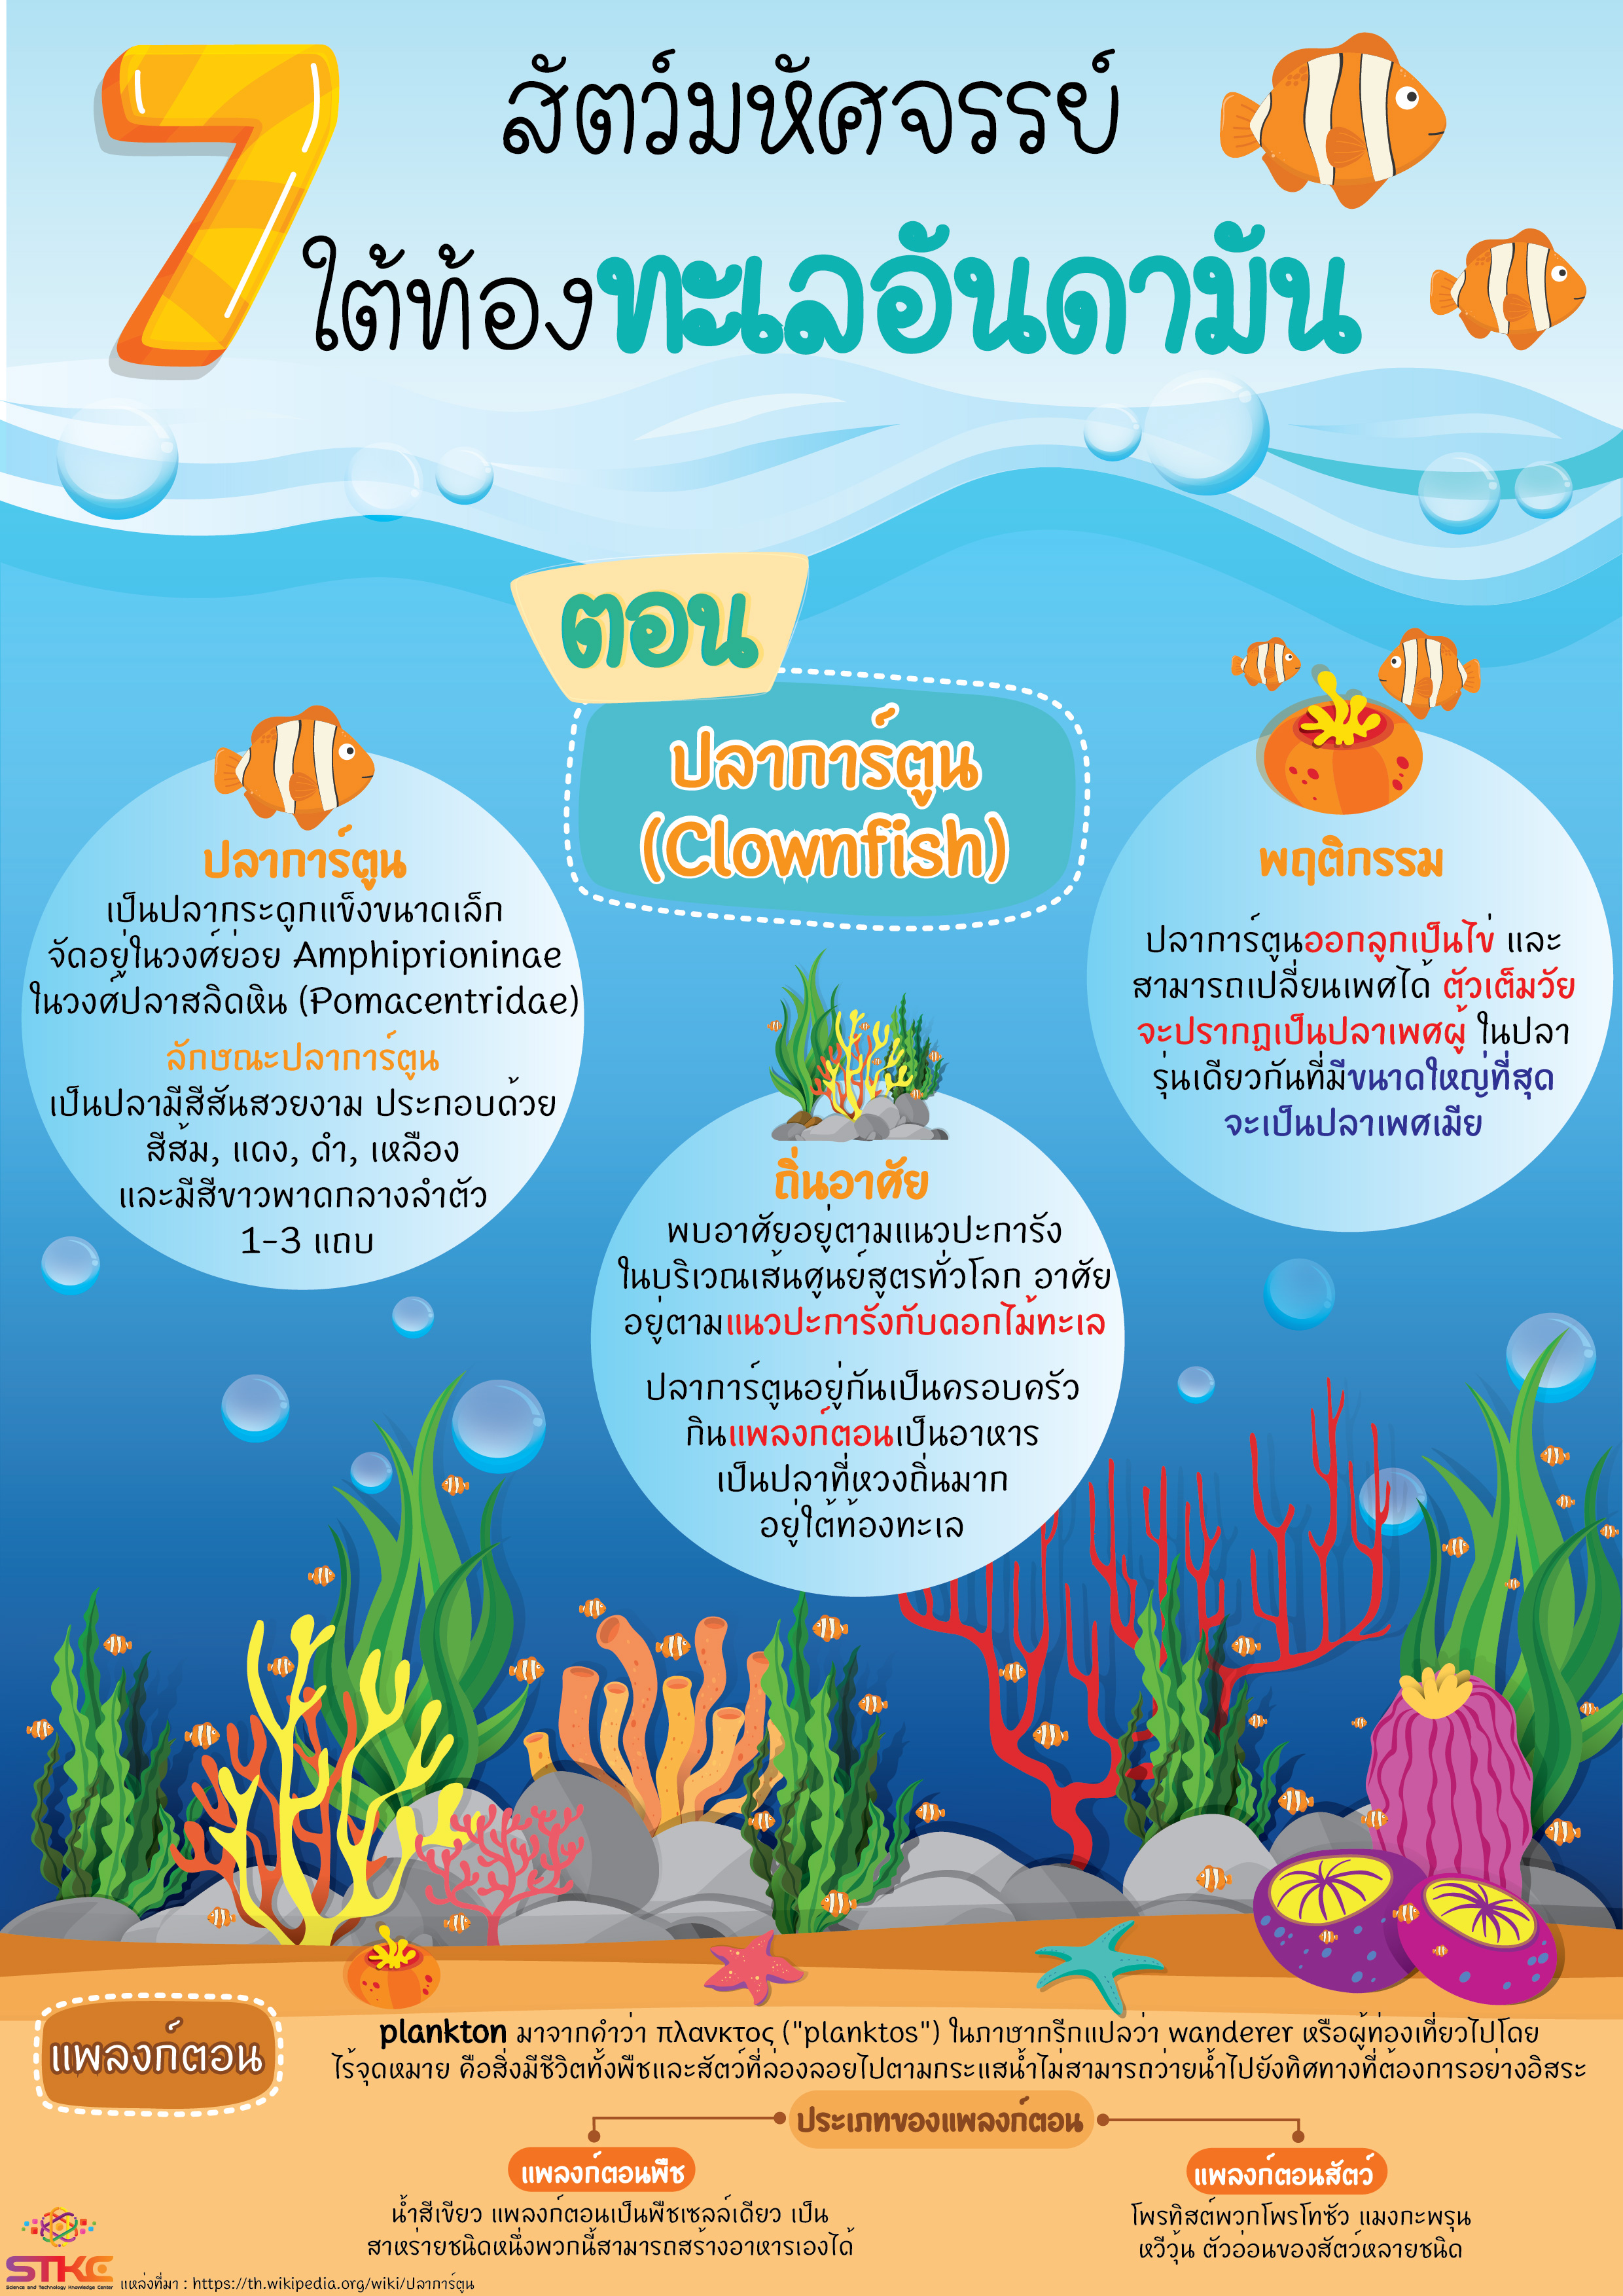 7 สัตว์มหัศจรรย์  ใต้ท้องทะเลอันดามัน ตอน ปลาการ์ตูน  (Clownfish)